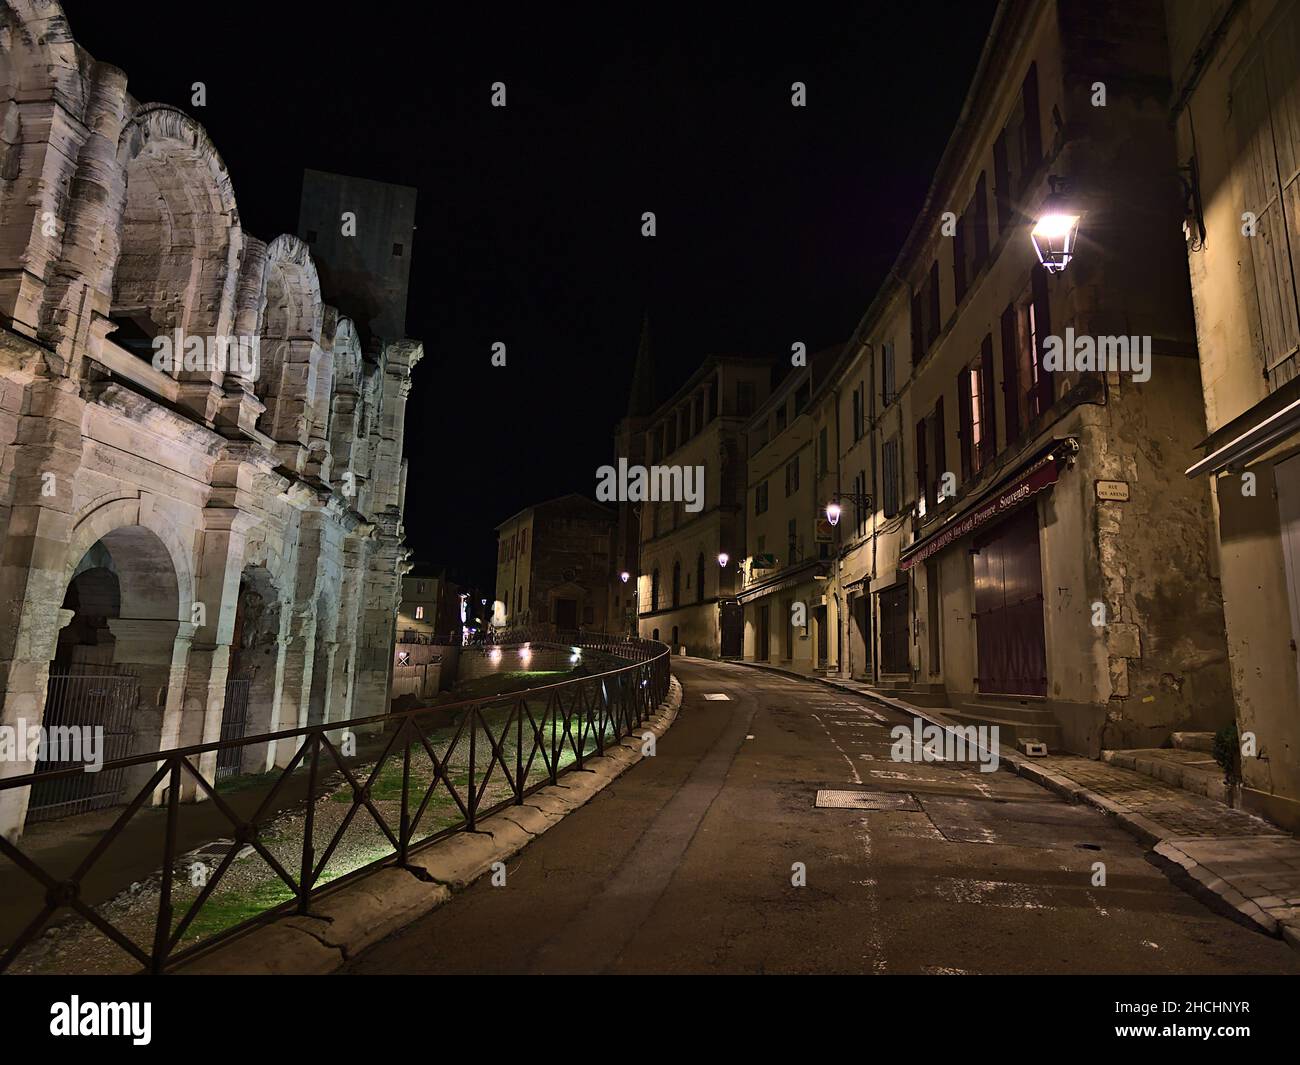 Vue sur le centre historique de la ville romaine Arles (Latin: Arelate) en Provence, France dans la soirée avec le célèbre amphithéâtre et les anciens bâtiments. Banque D'Images